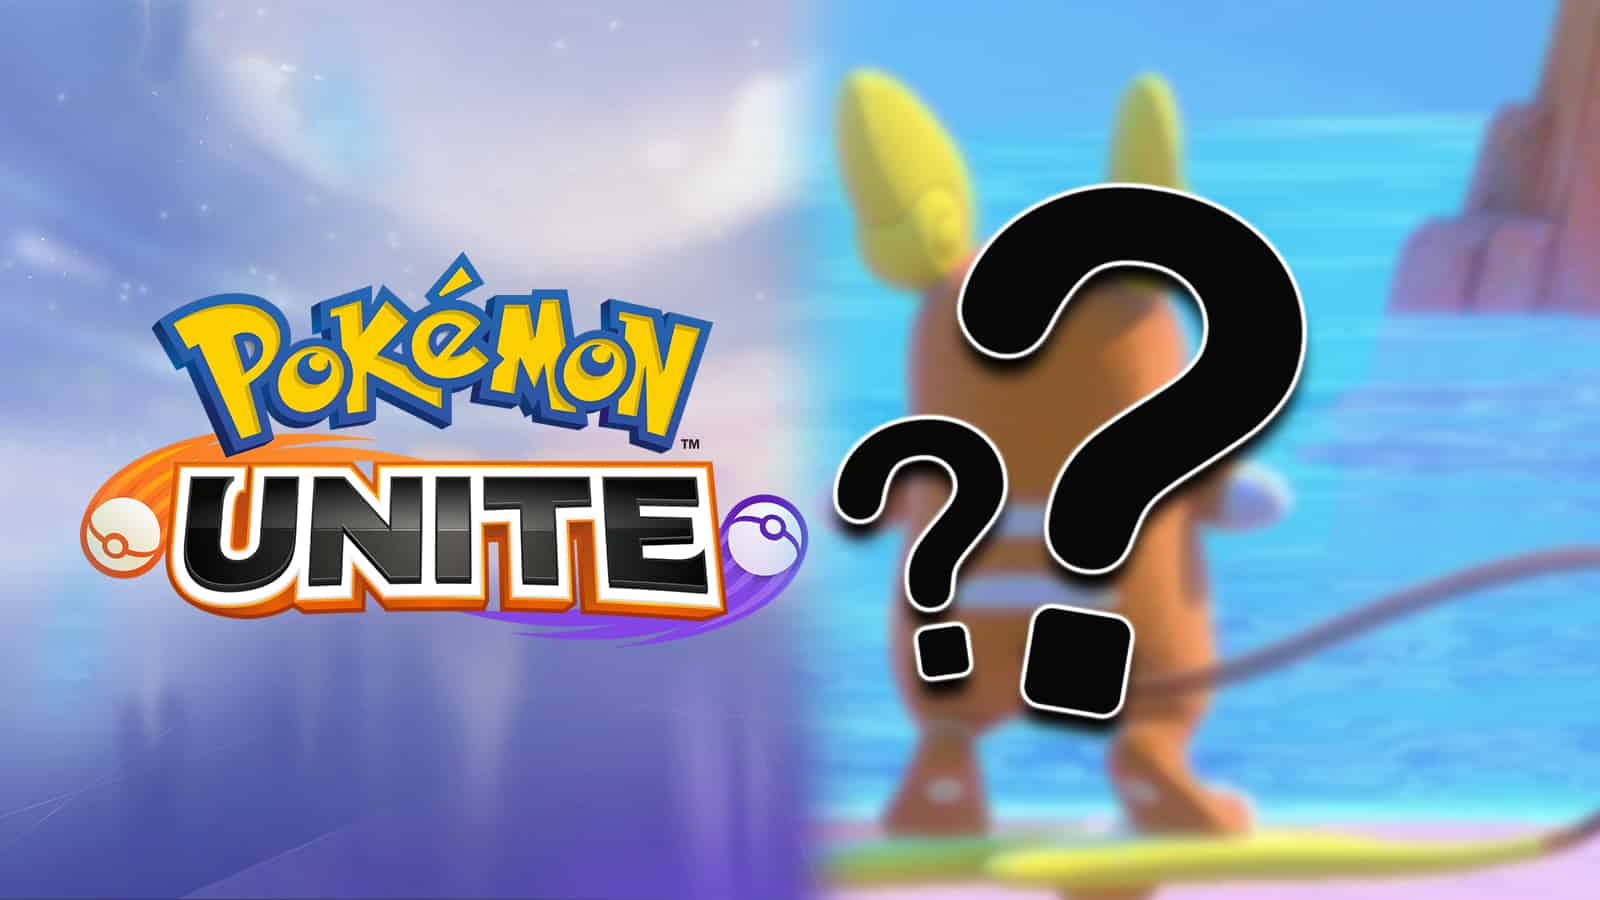 Pokemon Unite logo next to Pokemon Snap